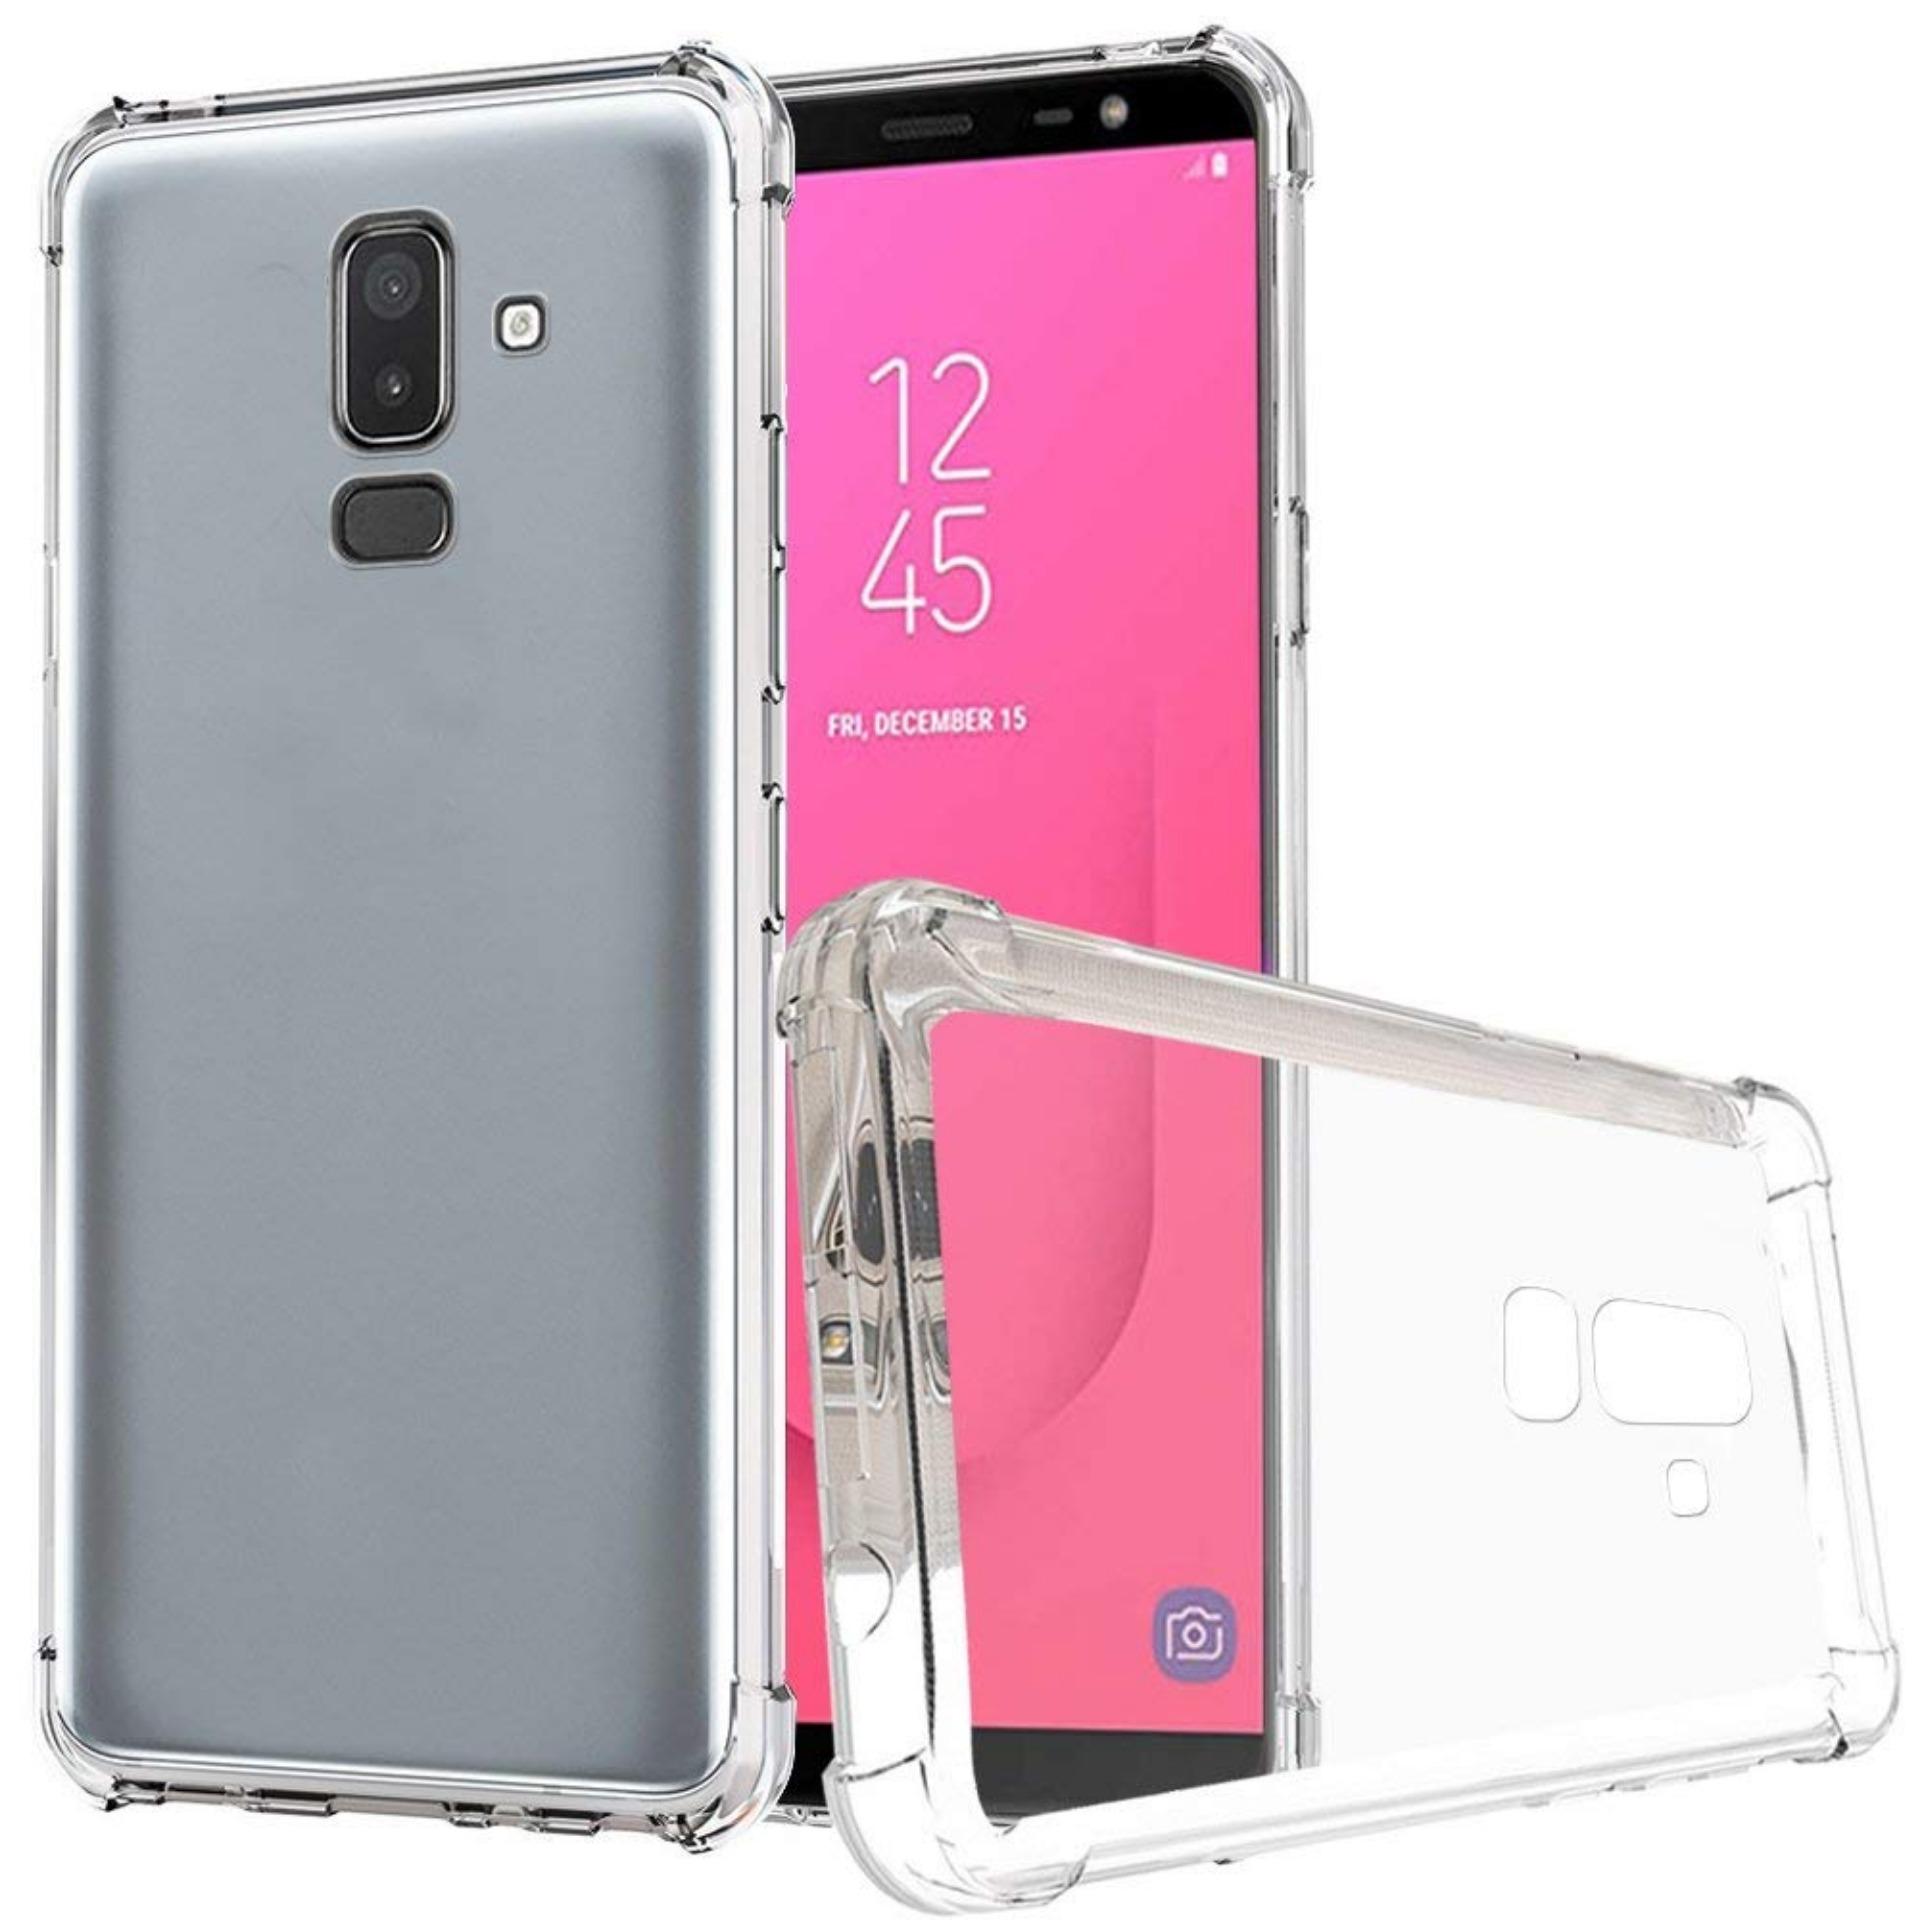 เคสกันกระแทก ซัมซุง เจ8 2018 สีใส Case Tpu Transparent Cover Full Protective Anti-knock Case For Samsung Galaxy J8 2018 (6.0\) Clear